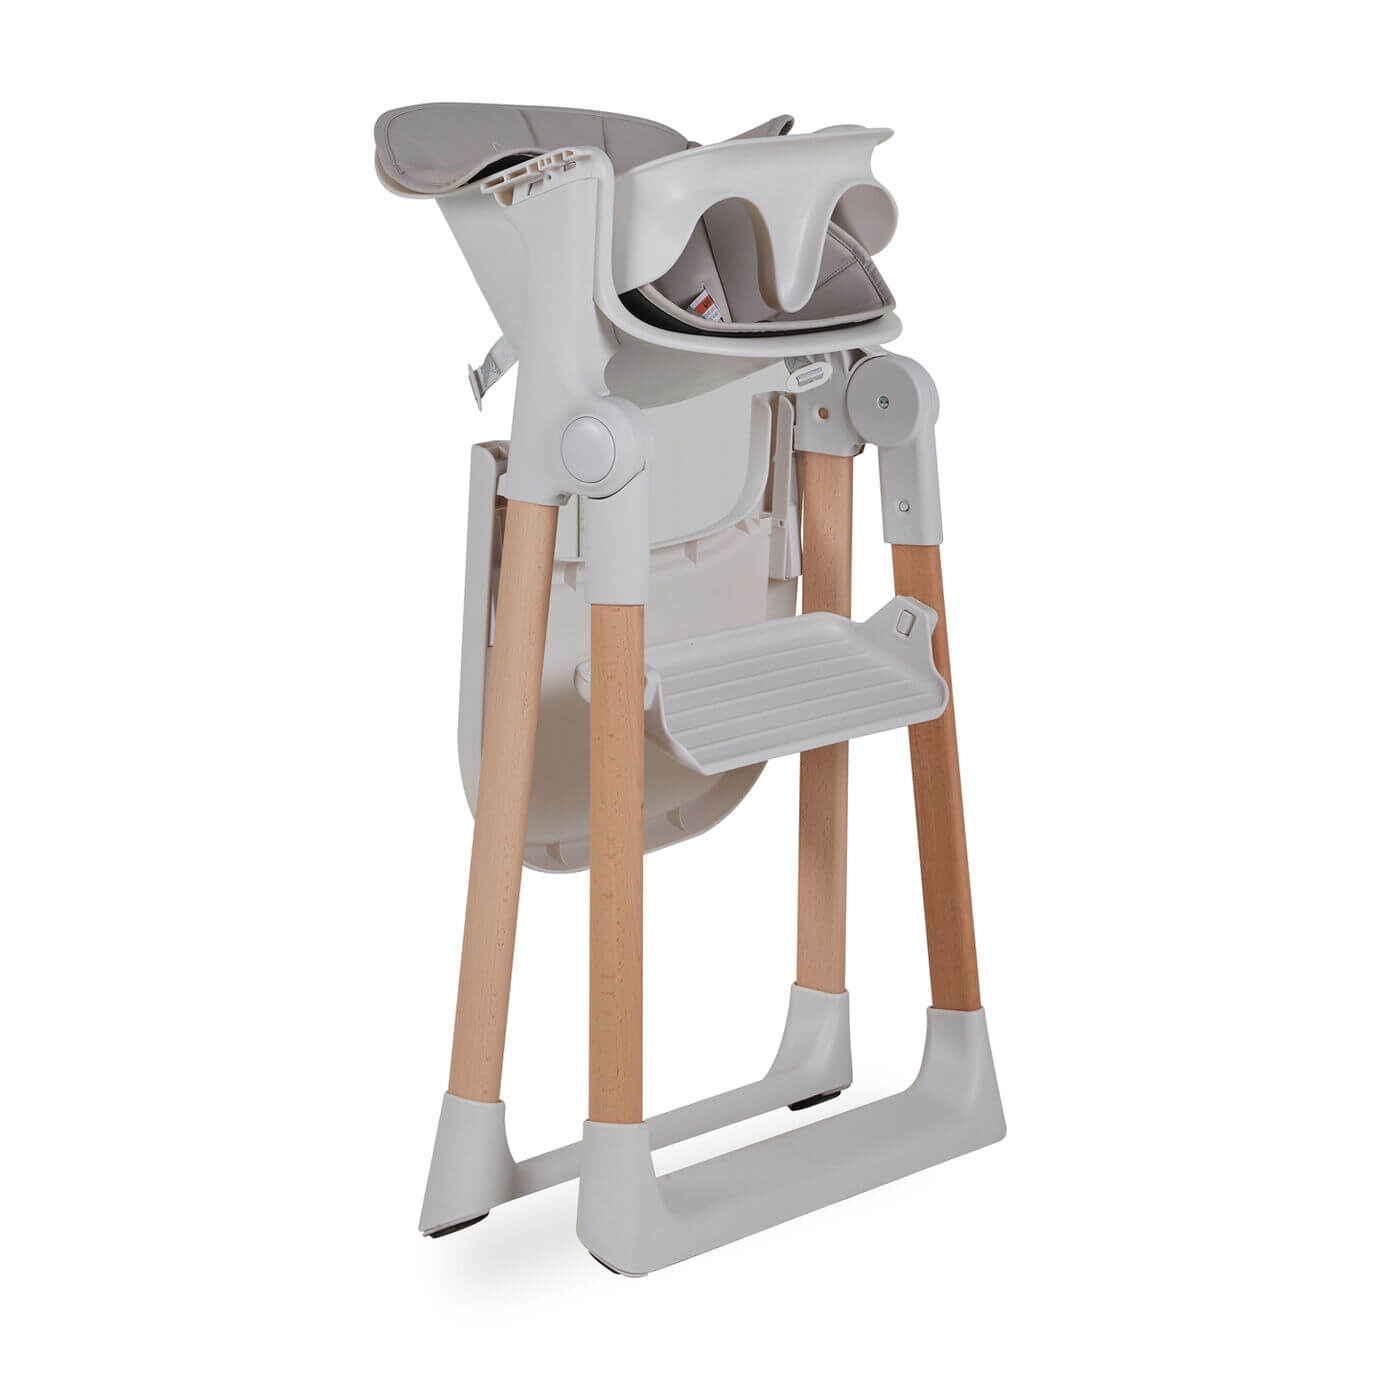 Chaise enfant évolutive Viola et Transat - Quax - High Chairs & Booster Seats par Quax